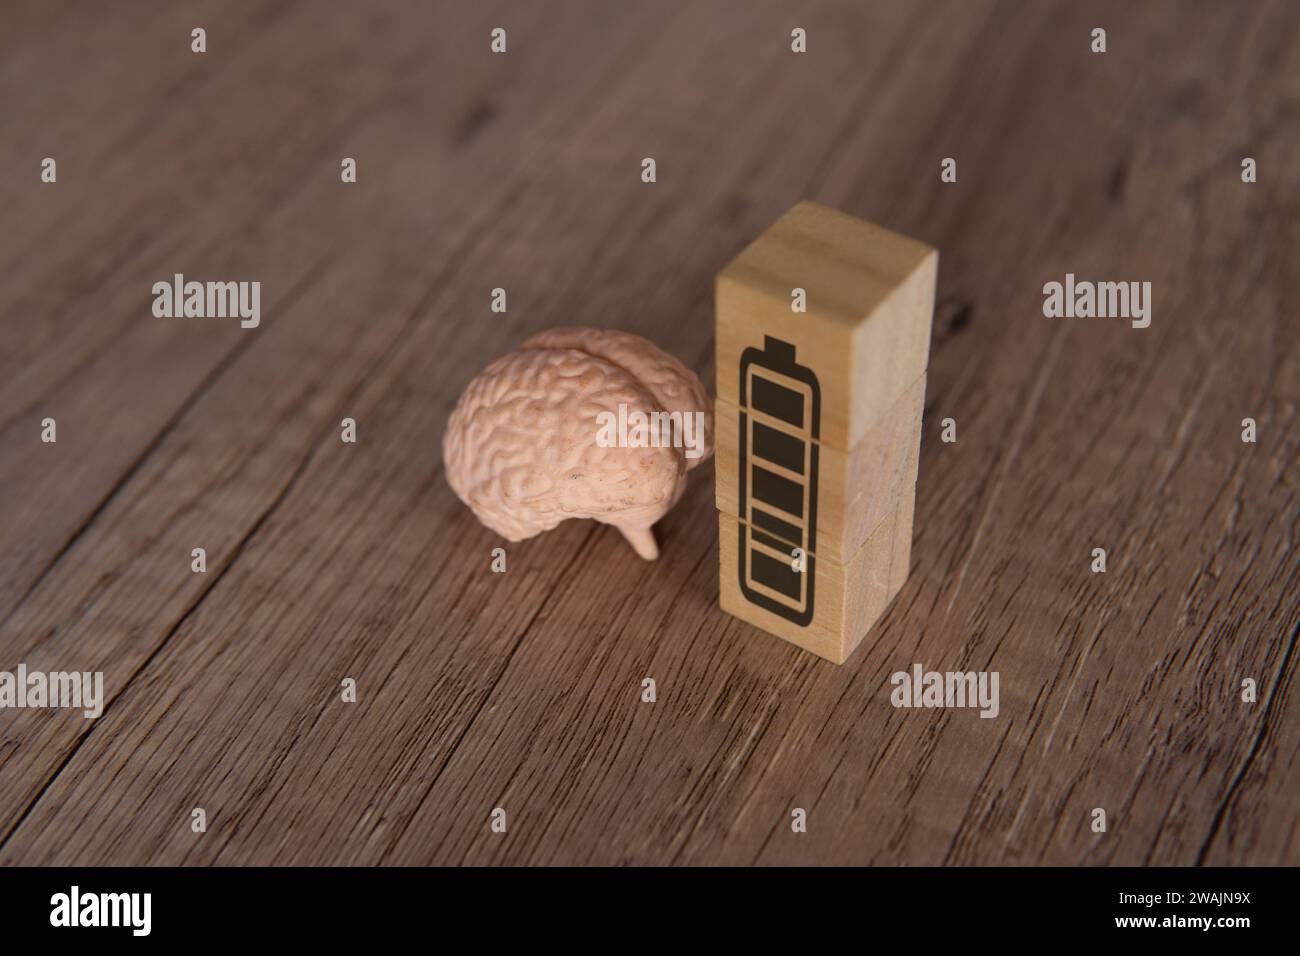 Nahaufnahme von Gehirn- und Holzblöcken mit Symbol für volle Energie-Batterie. Geisteskraft, geistiges Energiekonzept. Stockfoto